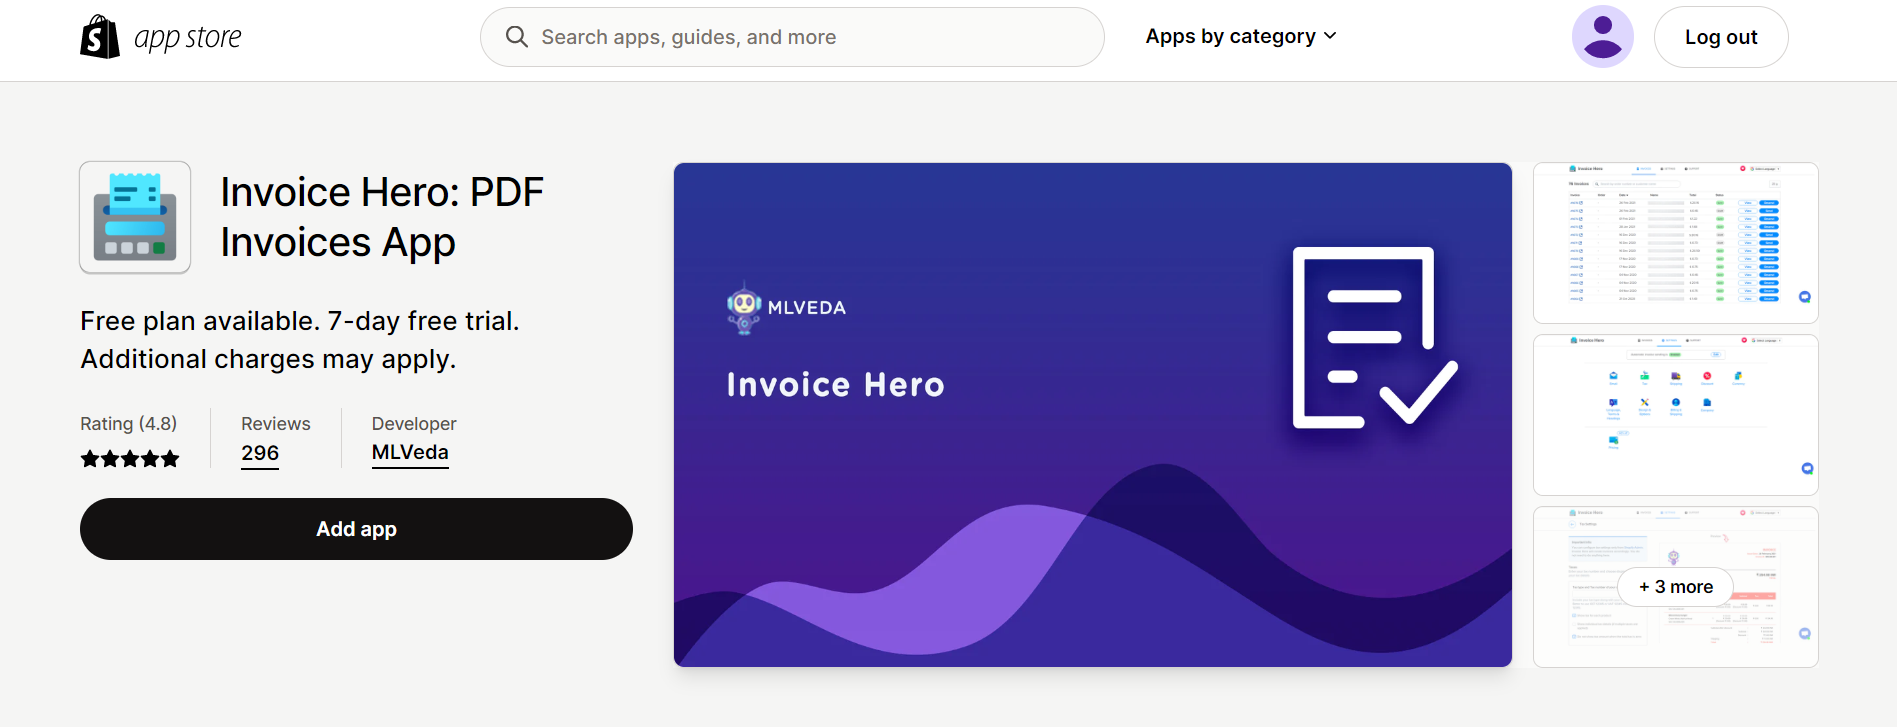 Invoice Hero: PDF Invoices App